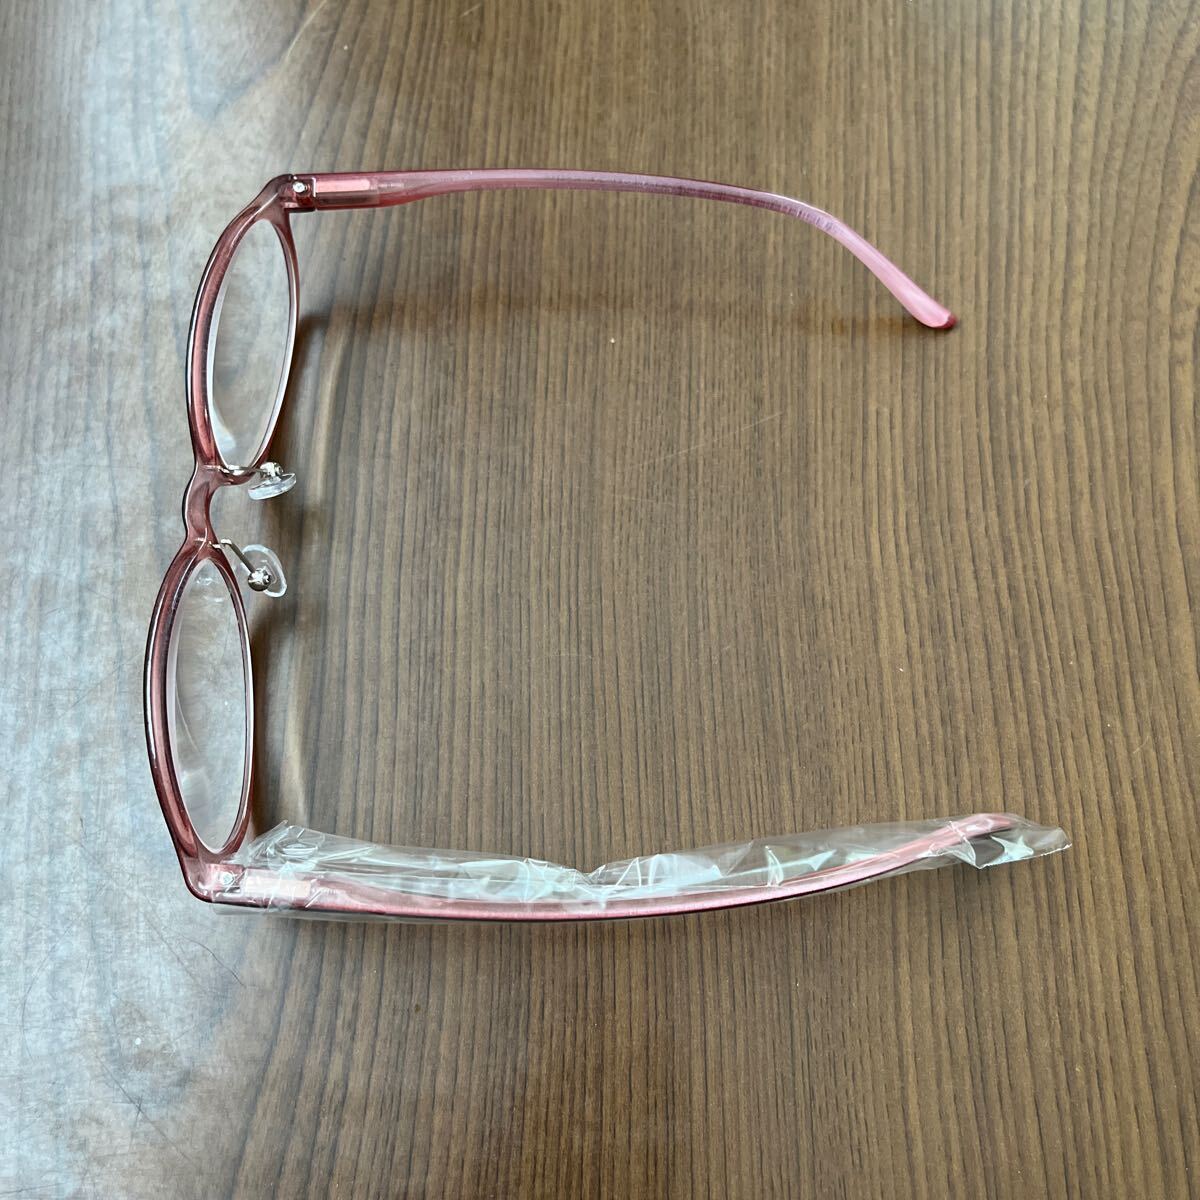 604p1910☆ [愛鏡] おしゃれ 老眼鏡 メンズ レディース 可愛い お洒落 オシャレ 強い度数 5.0 6.0あり かっこいい老眼鏡 軽い